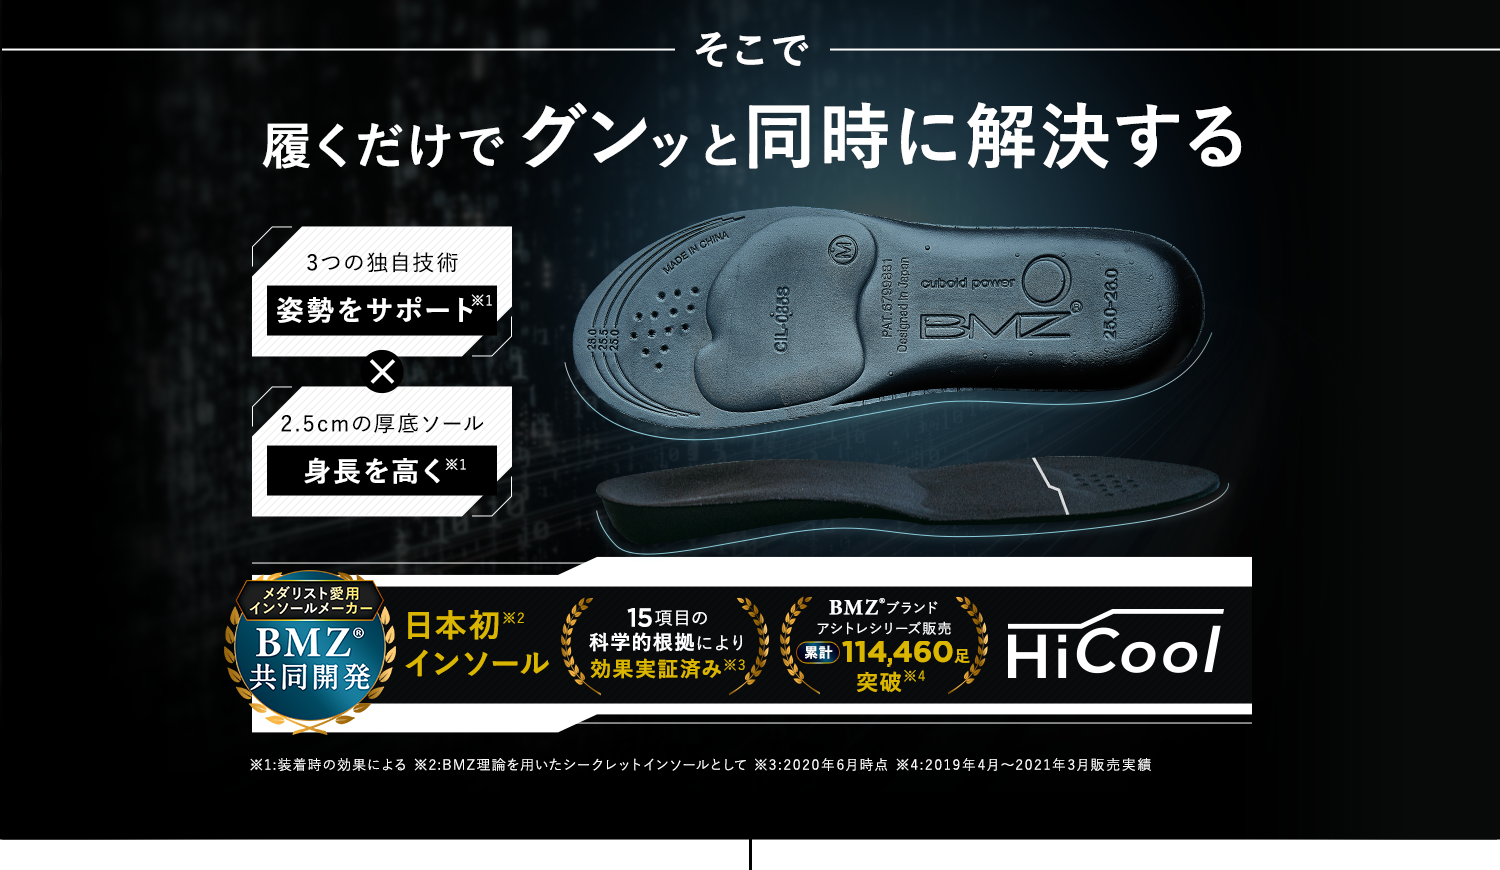 そこで履くだけでグンッと同時に解決する 日本初インソールHiCool